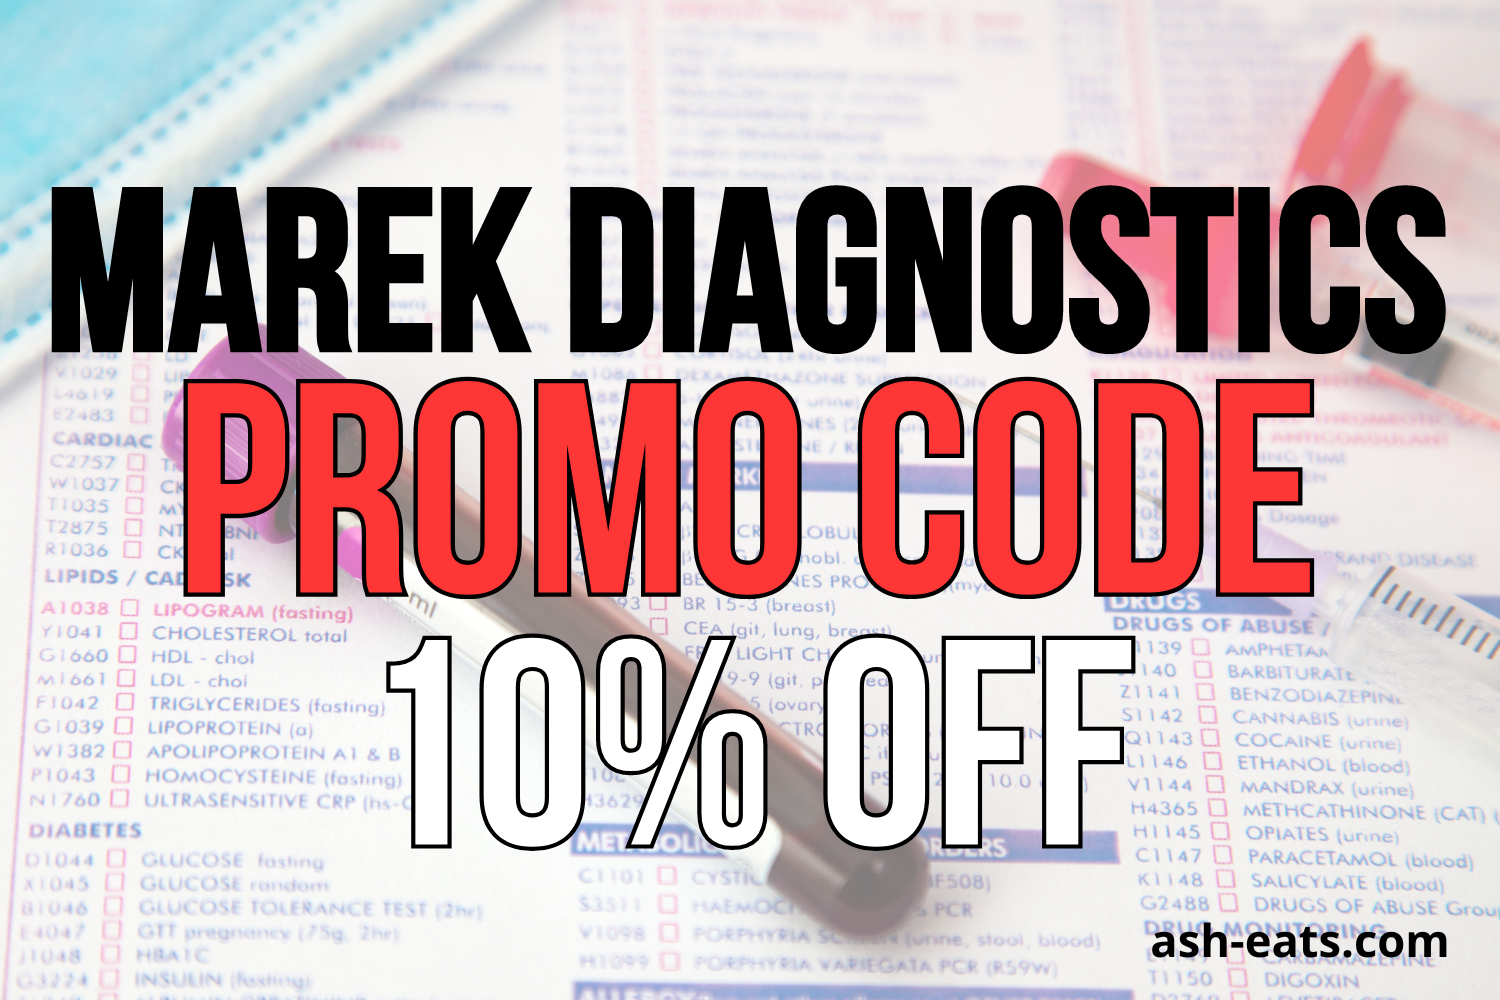 marek diagnostics promo code